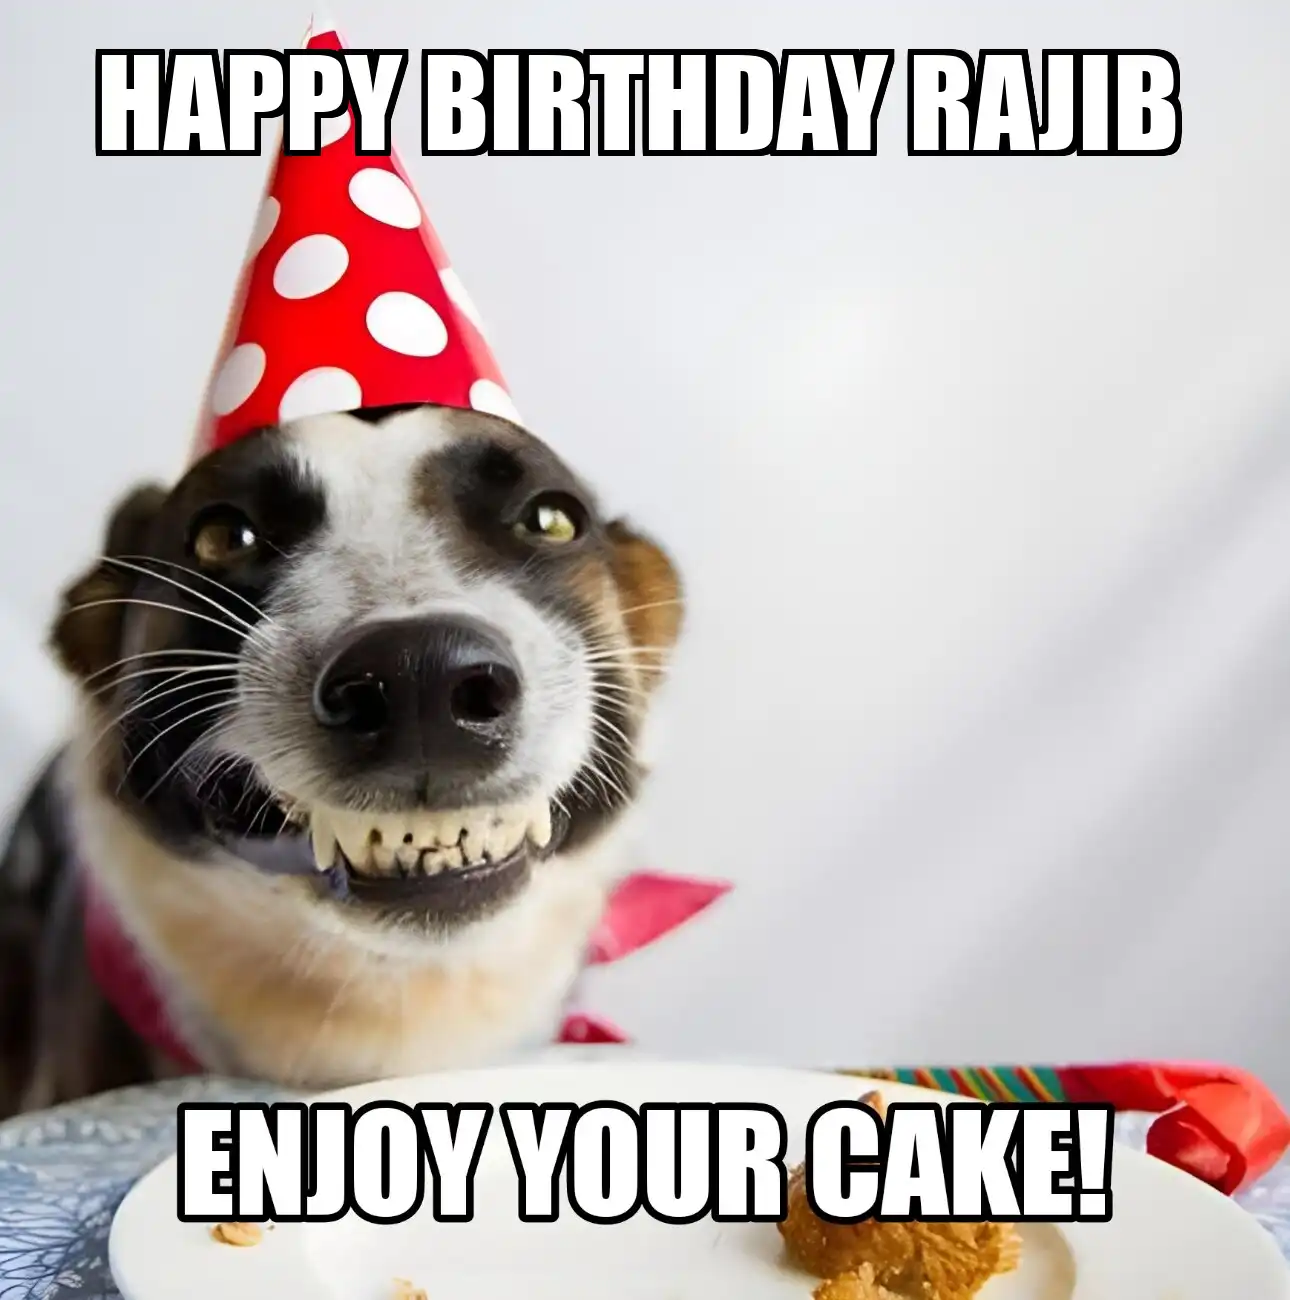 Happy Birthday Rajib Enjoy Your Cake Dog Meme